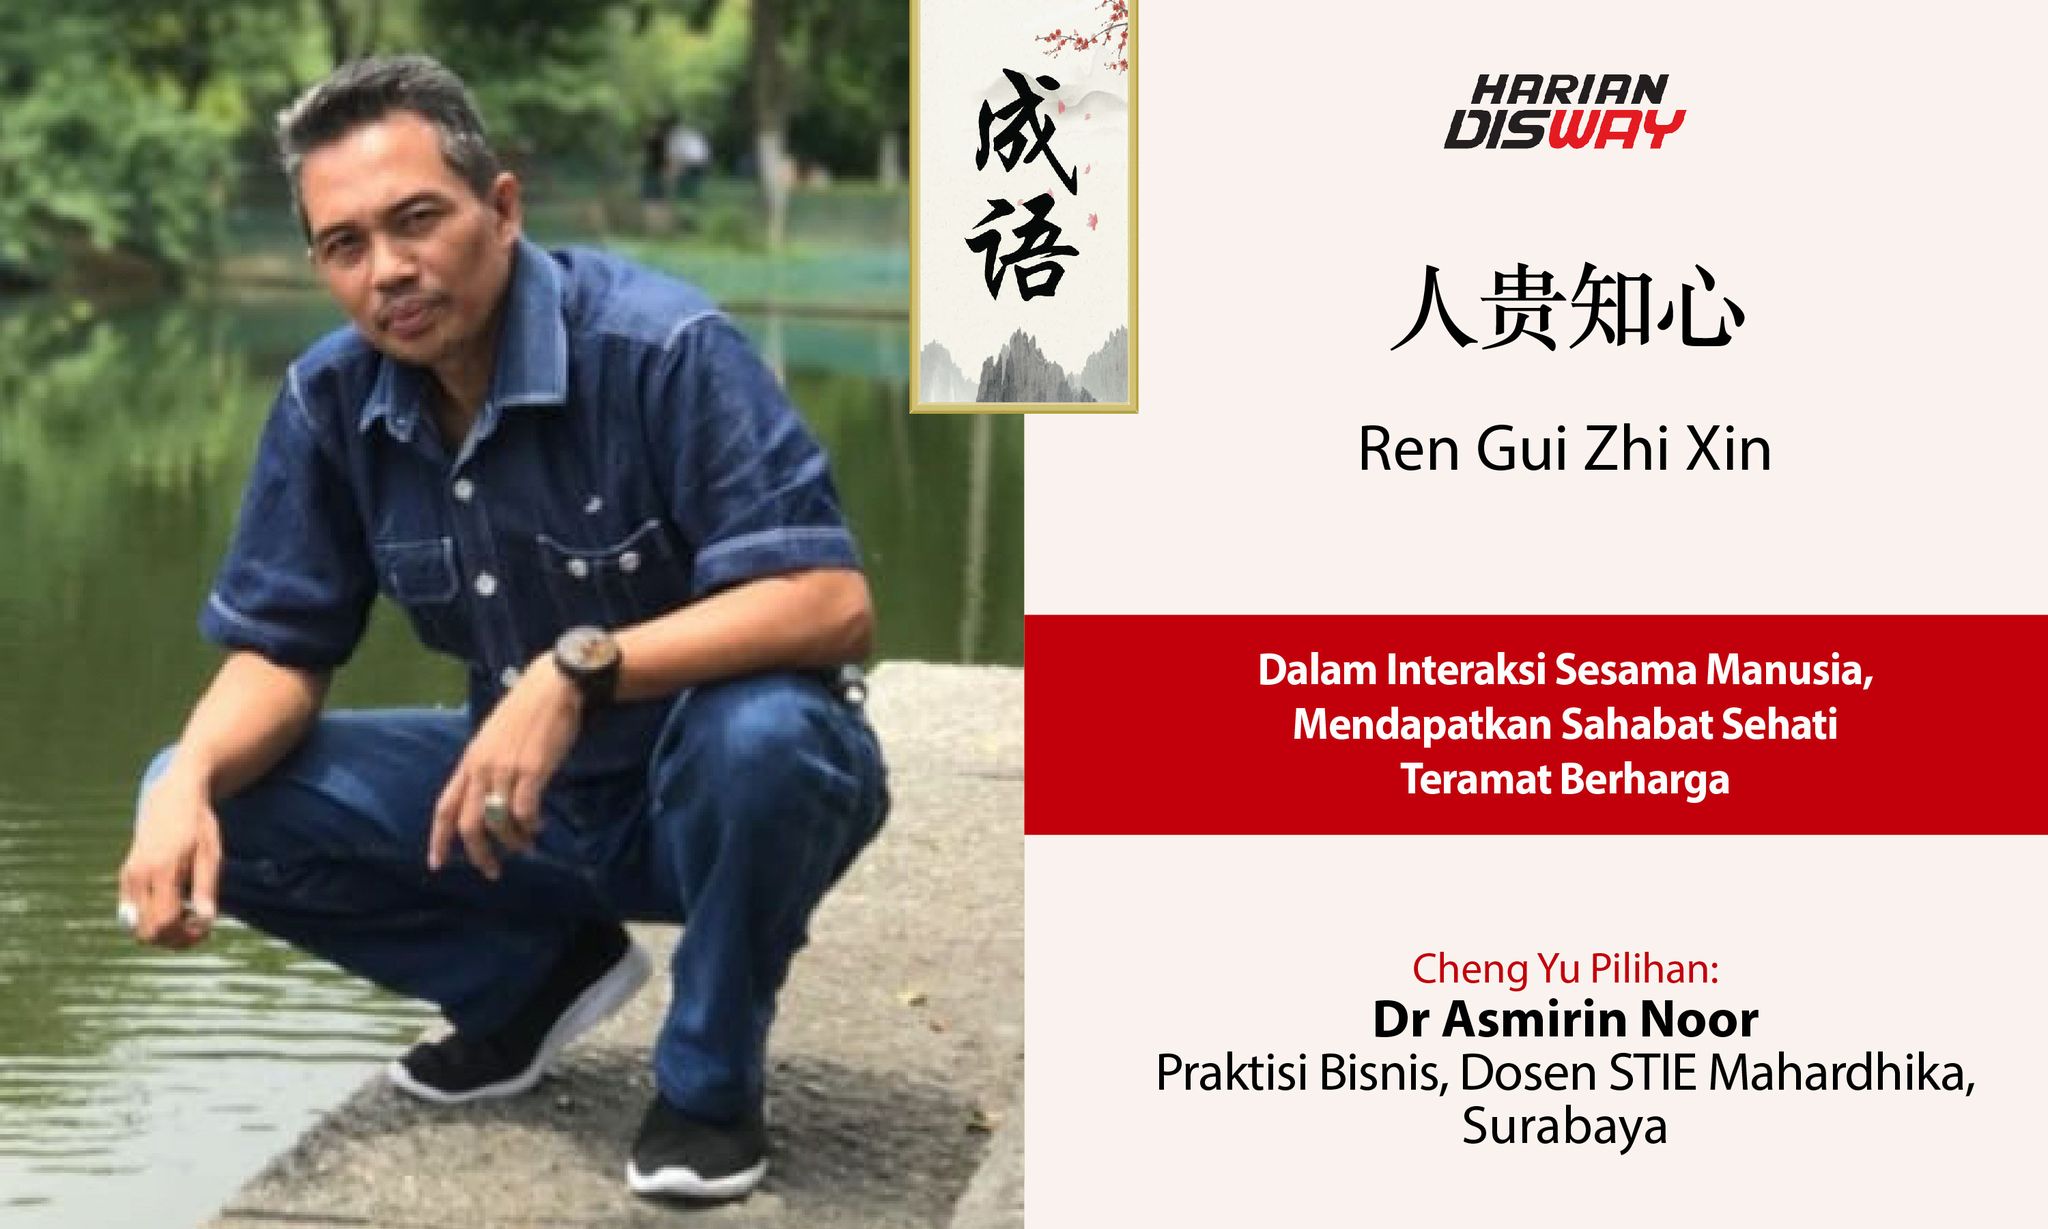 Cheng Yu Pilihan Praktisi Bisnis, Dosen STIE Mahardhika Surabaya Dr Asmirin Noor: Ren Gui Zhi Xin